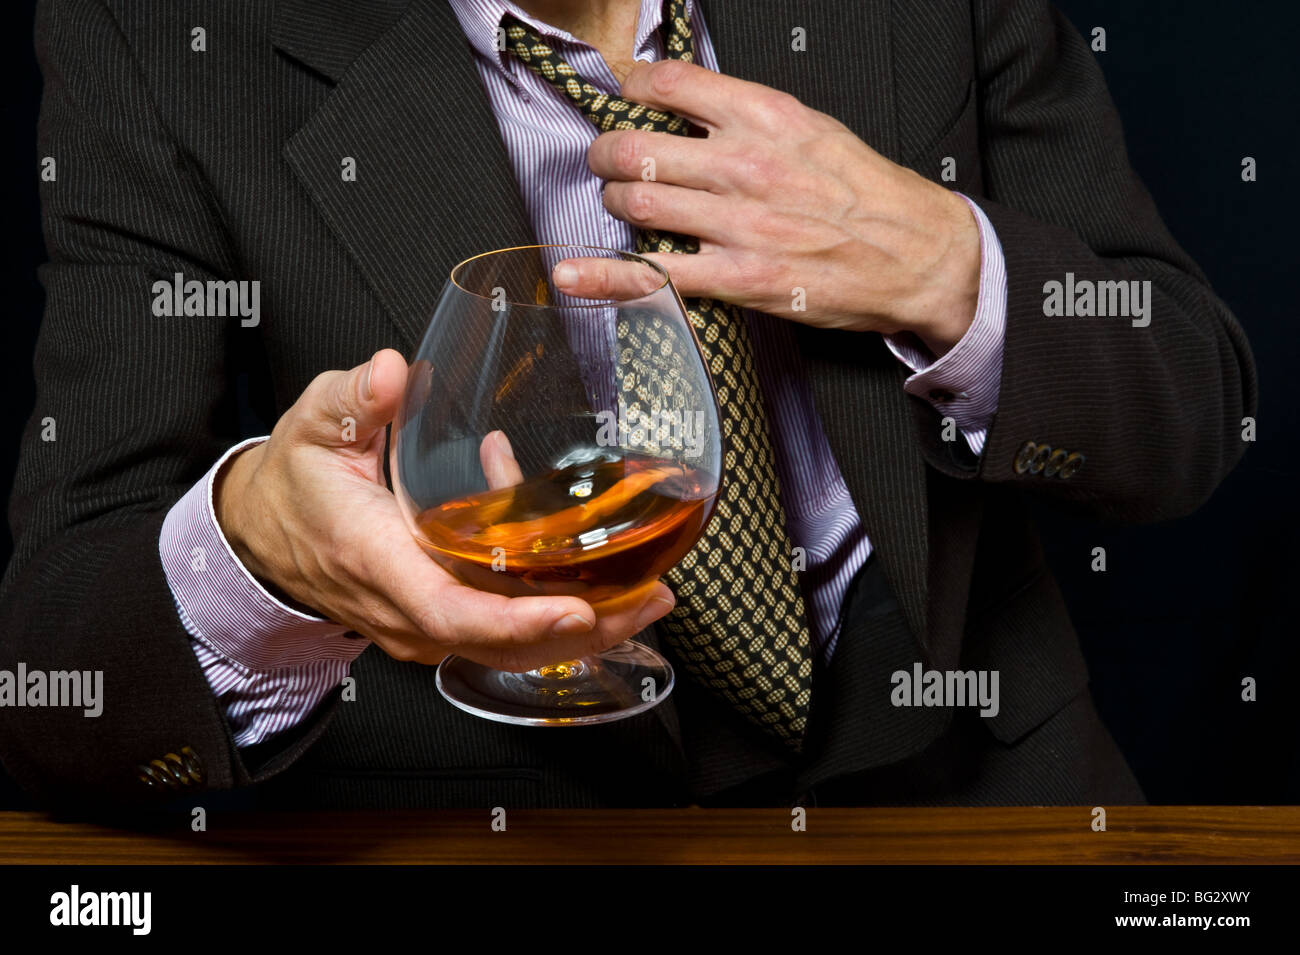 Vetro con alcool in una mano di un uomo in una tuta su sfondo scuro Foto Stock